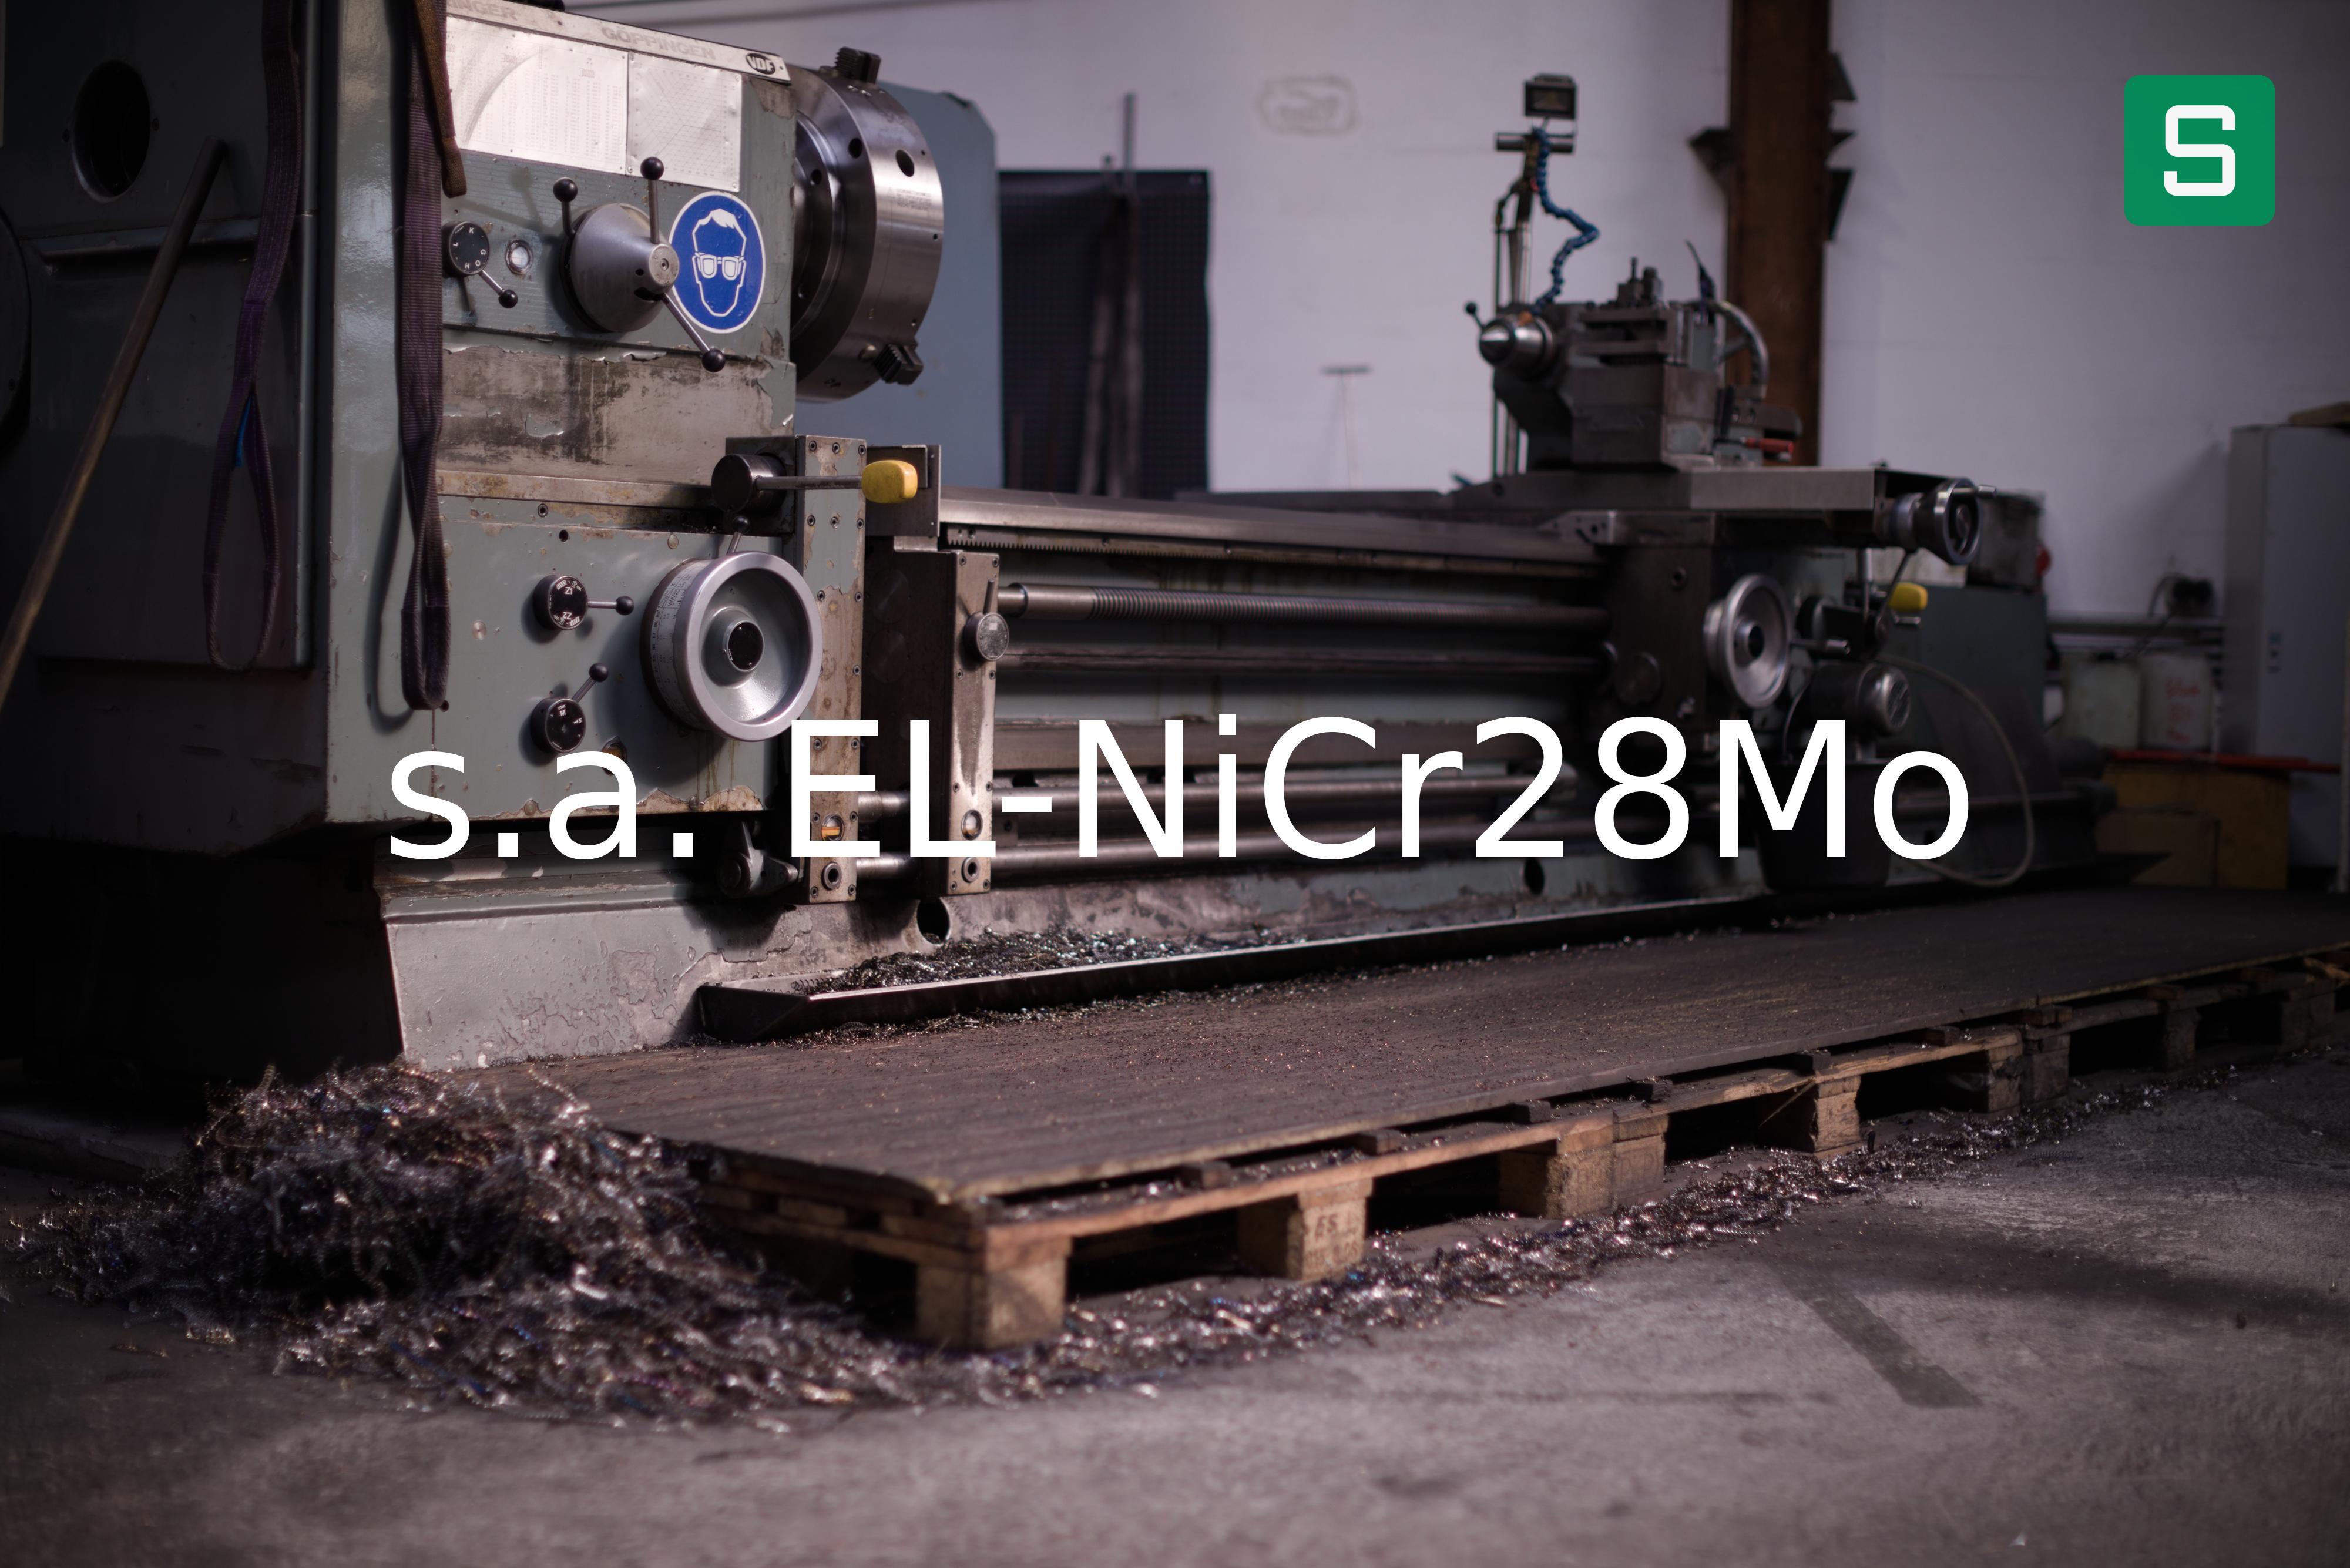 Steel Material: s.a. EL-NiCr28Mo